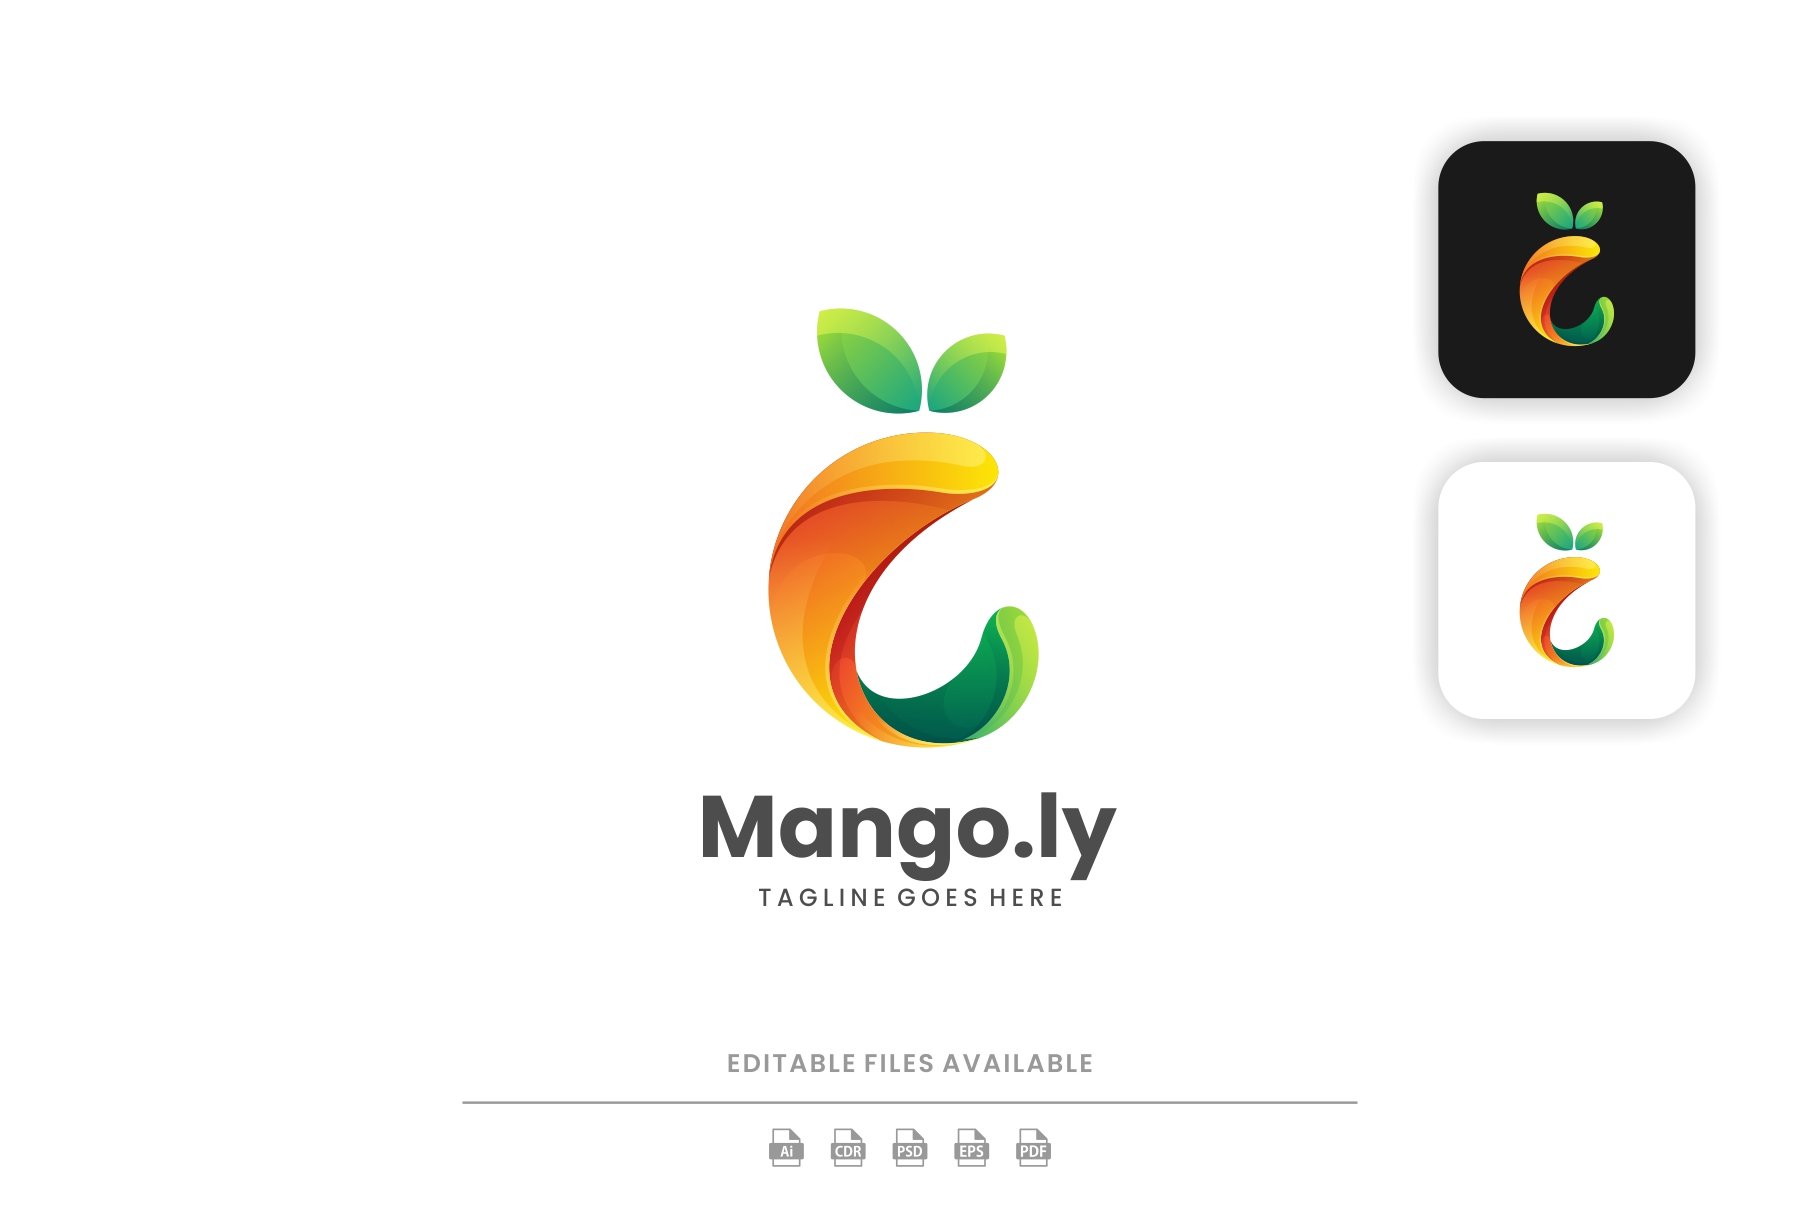 Mango Colorful Logo cover image.